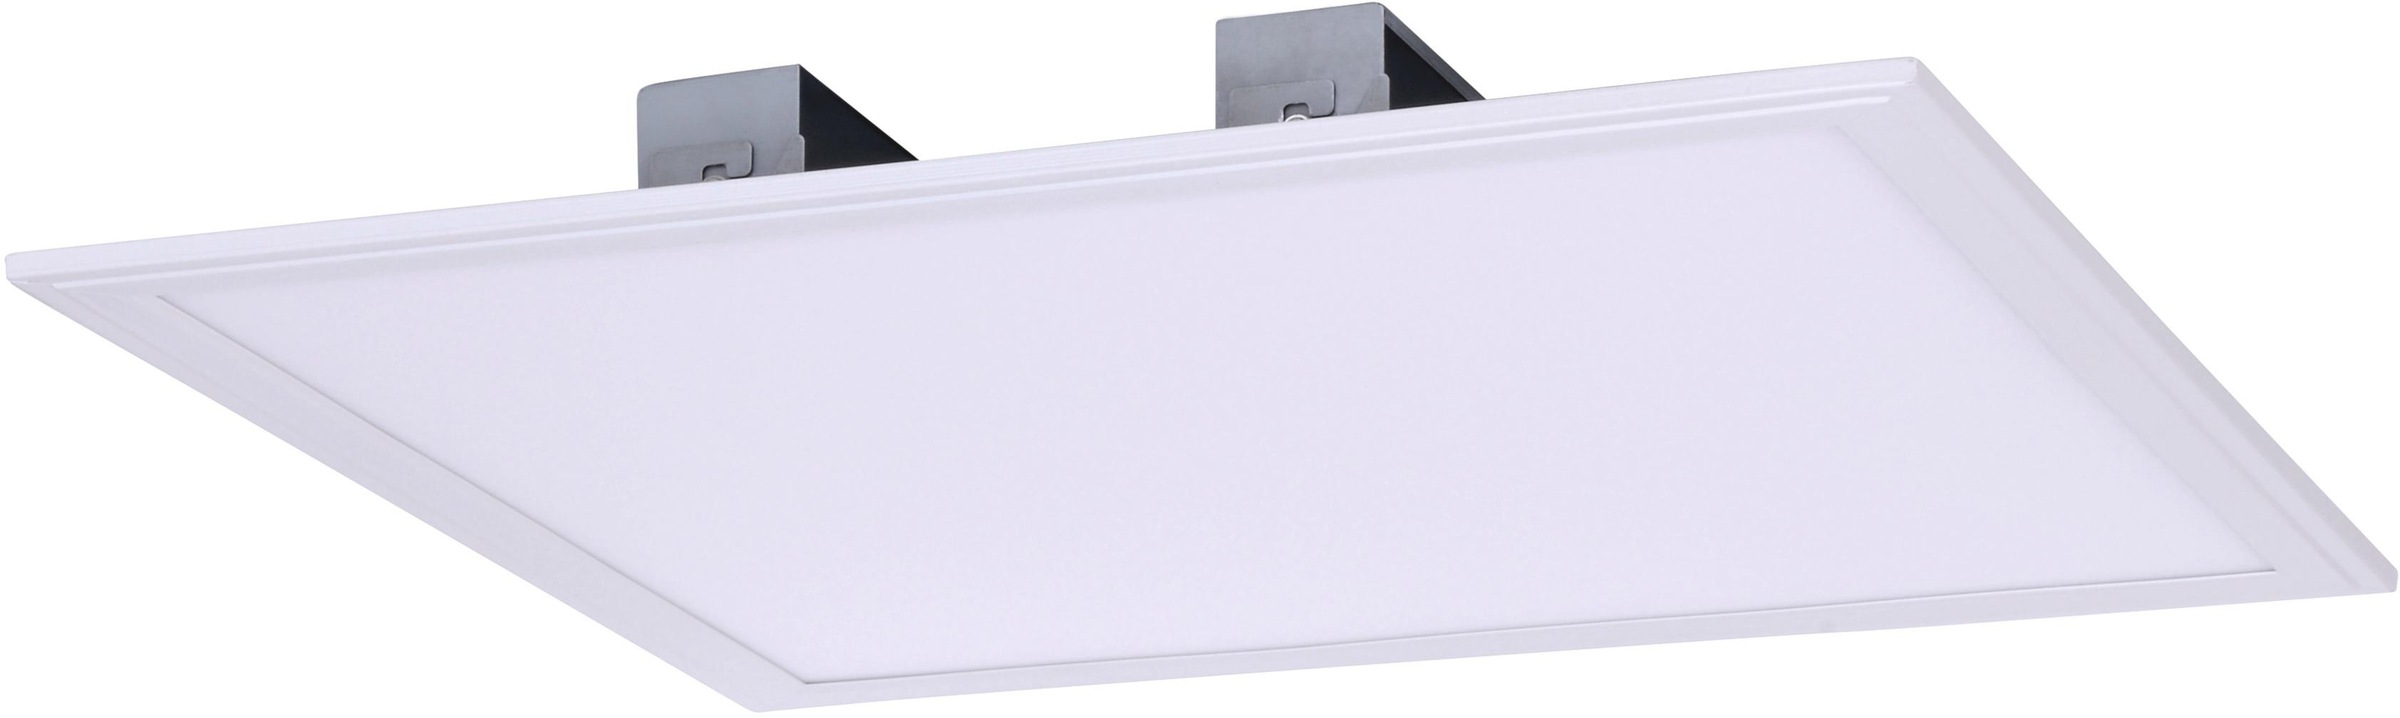 OTTO Panel LED näve weiß kaufen »PANEL«, Energieeffizienz: LED F, Treiber, Aufbaupanel, bei incl. online